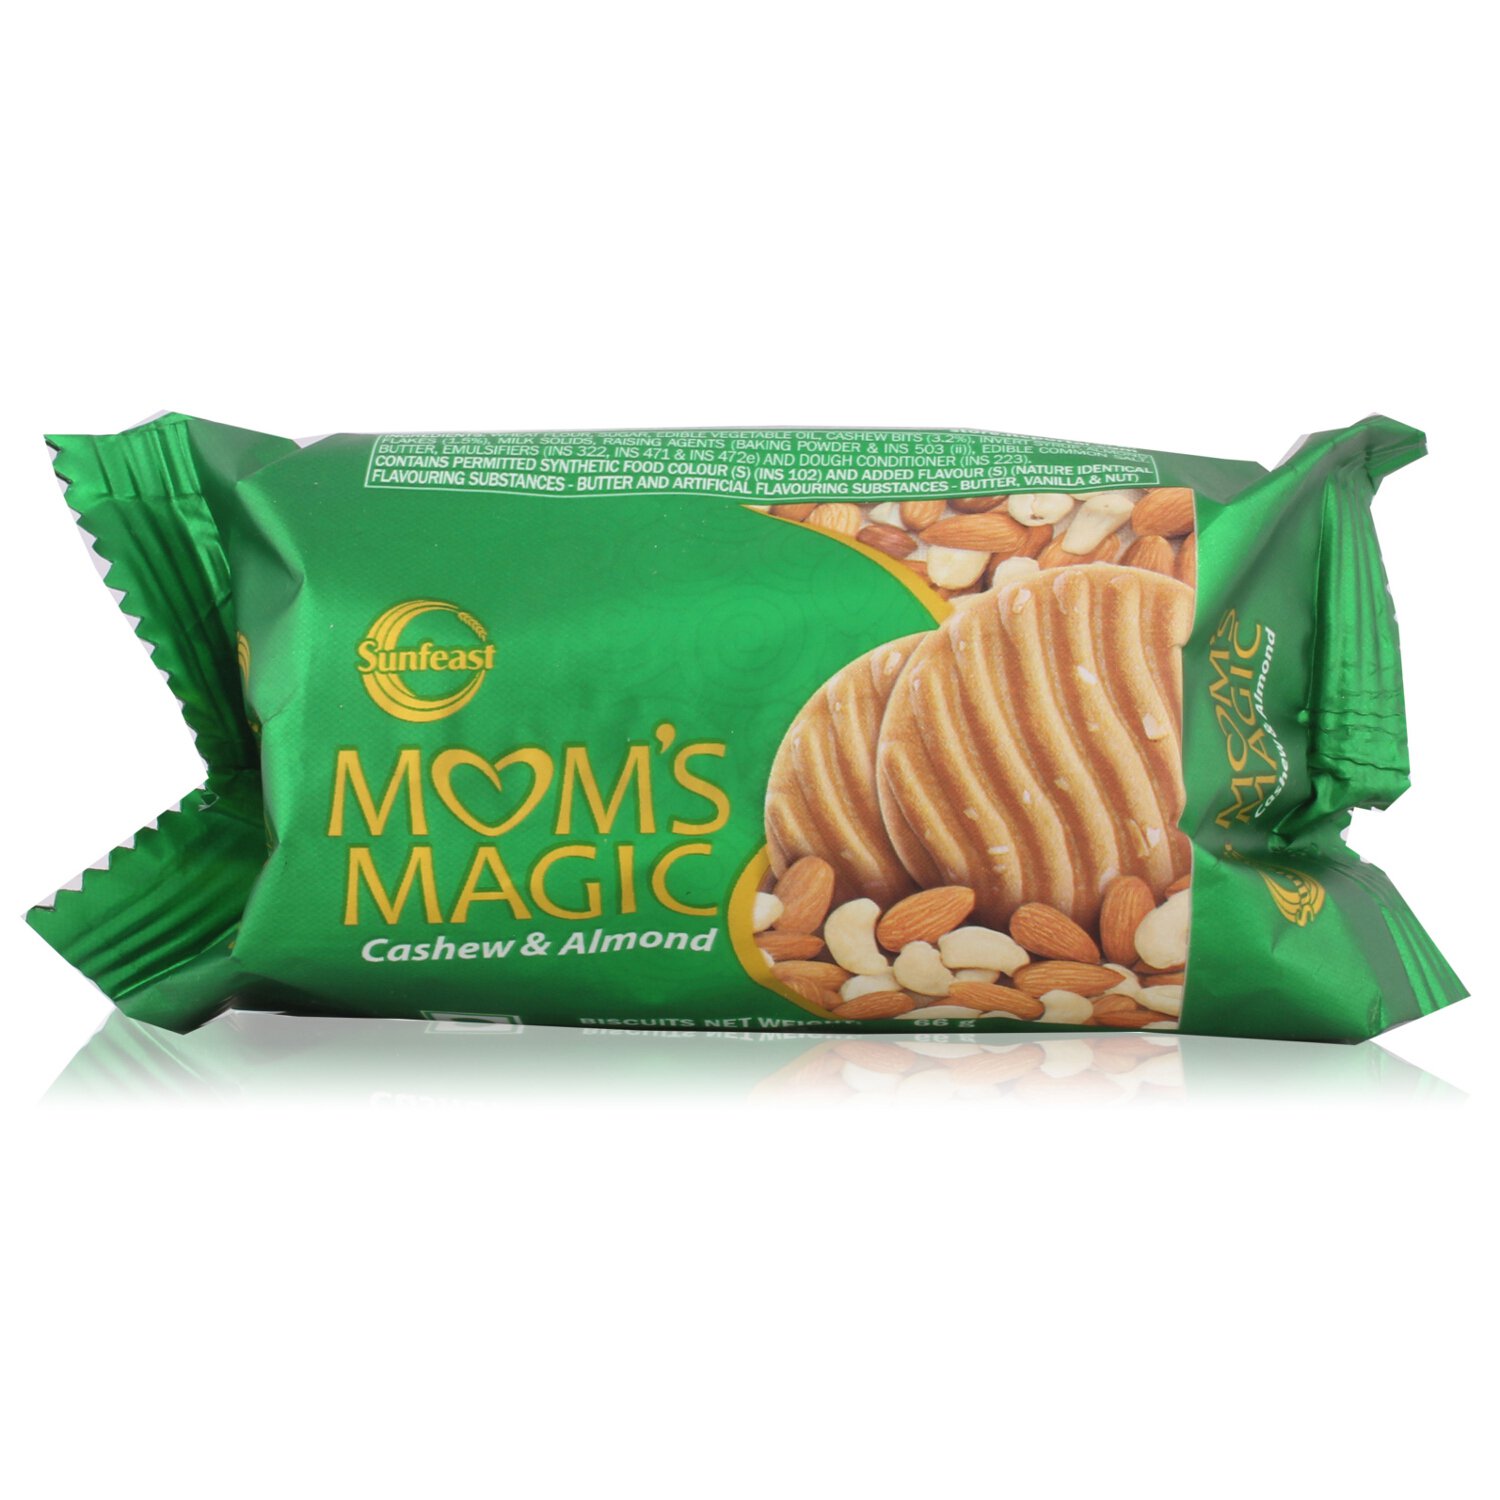 Sunfeast Mom's Magic Biscuit - Cashew & Almond